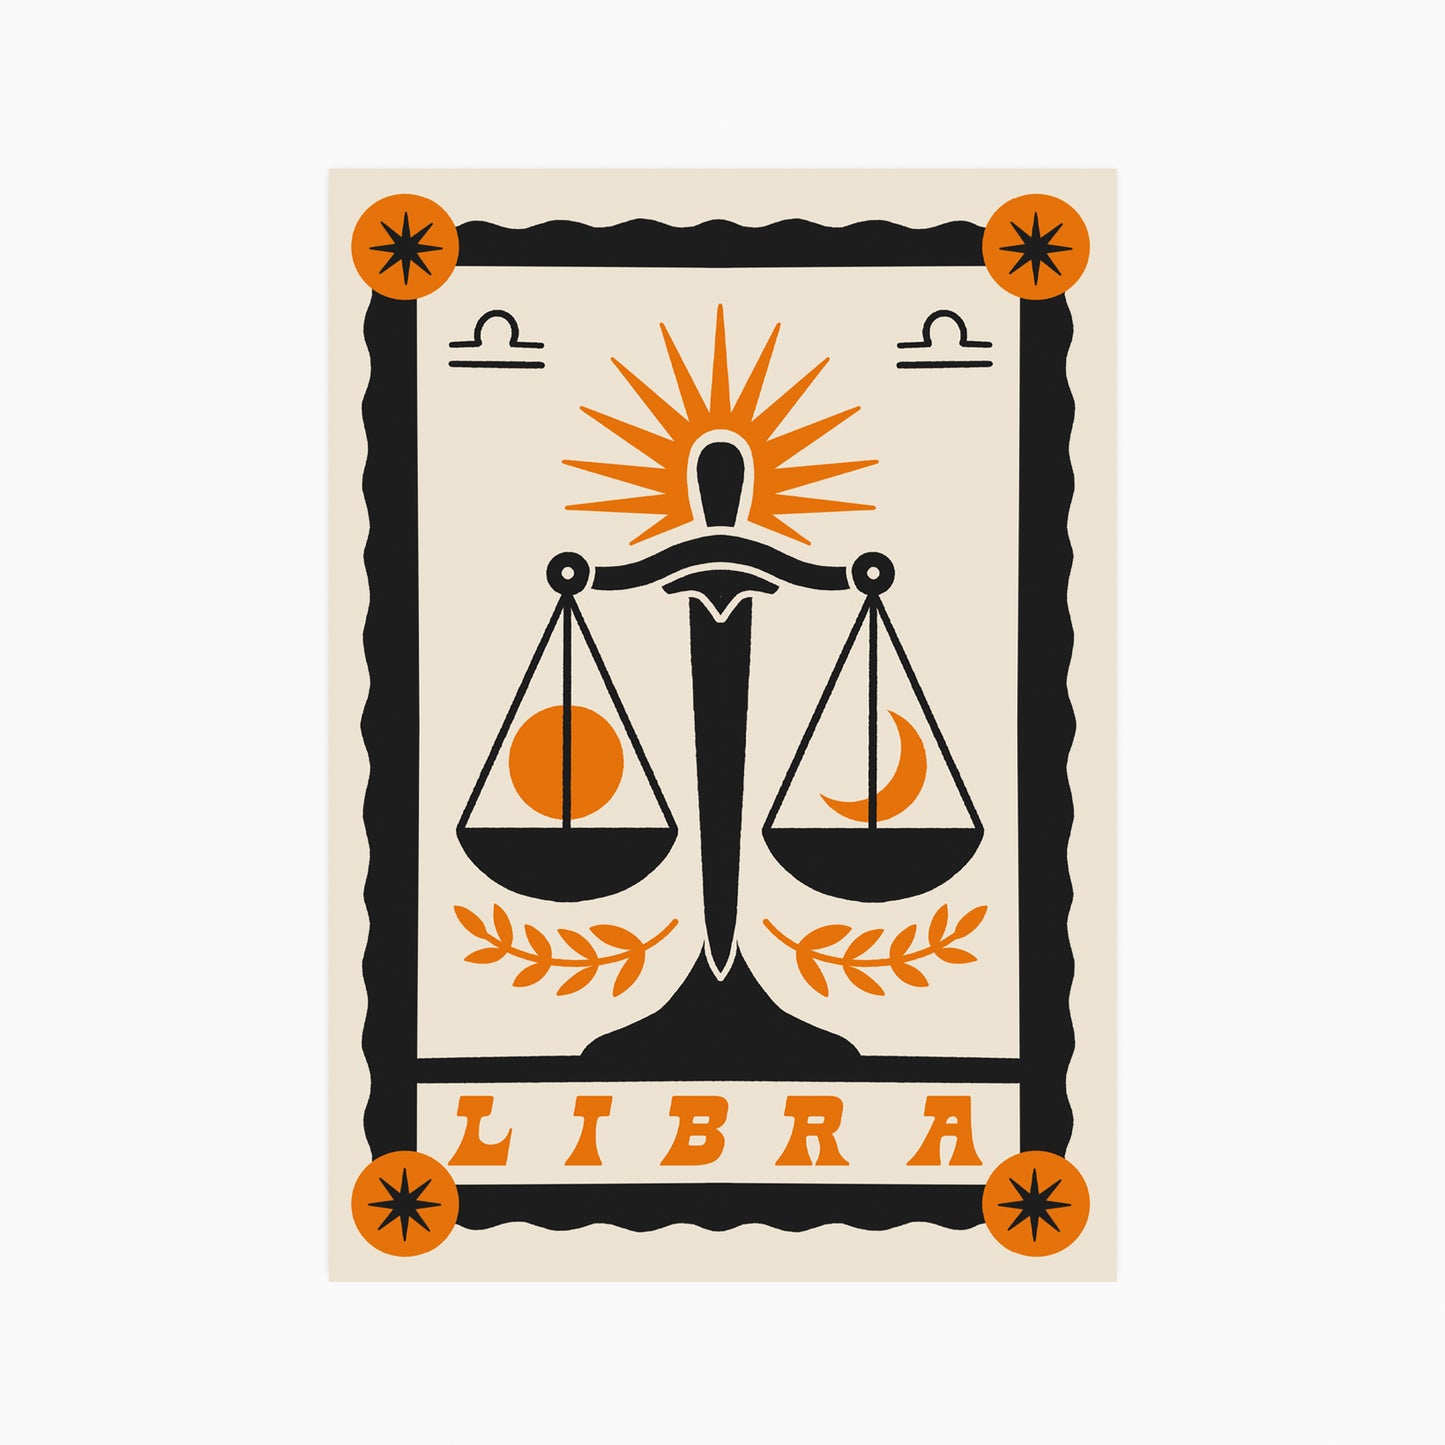 Libra - Postcard